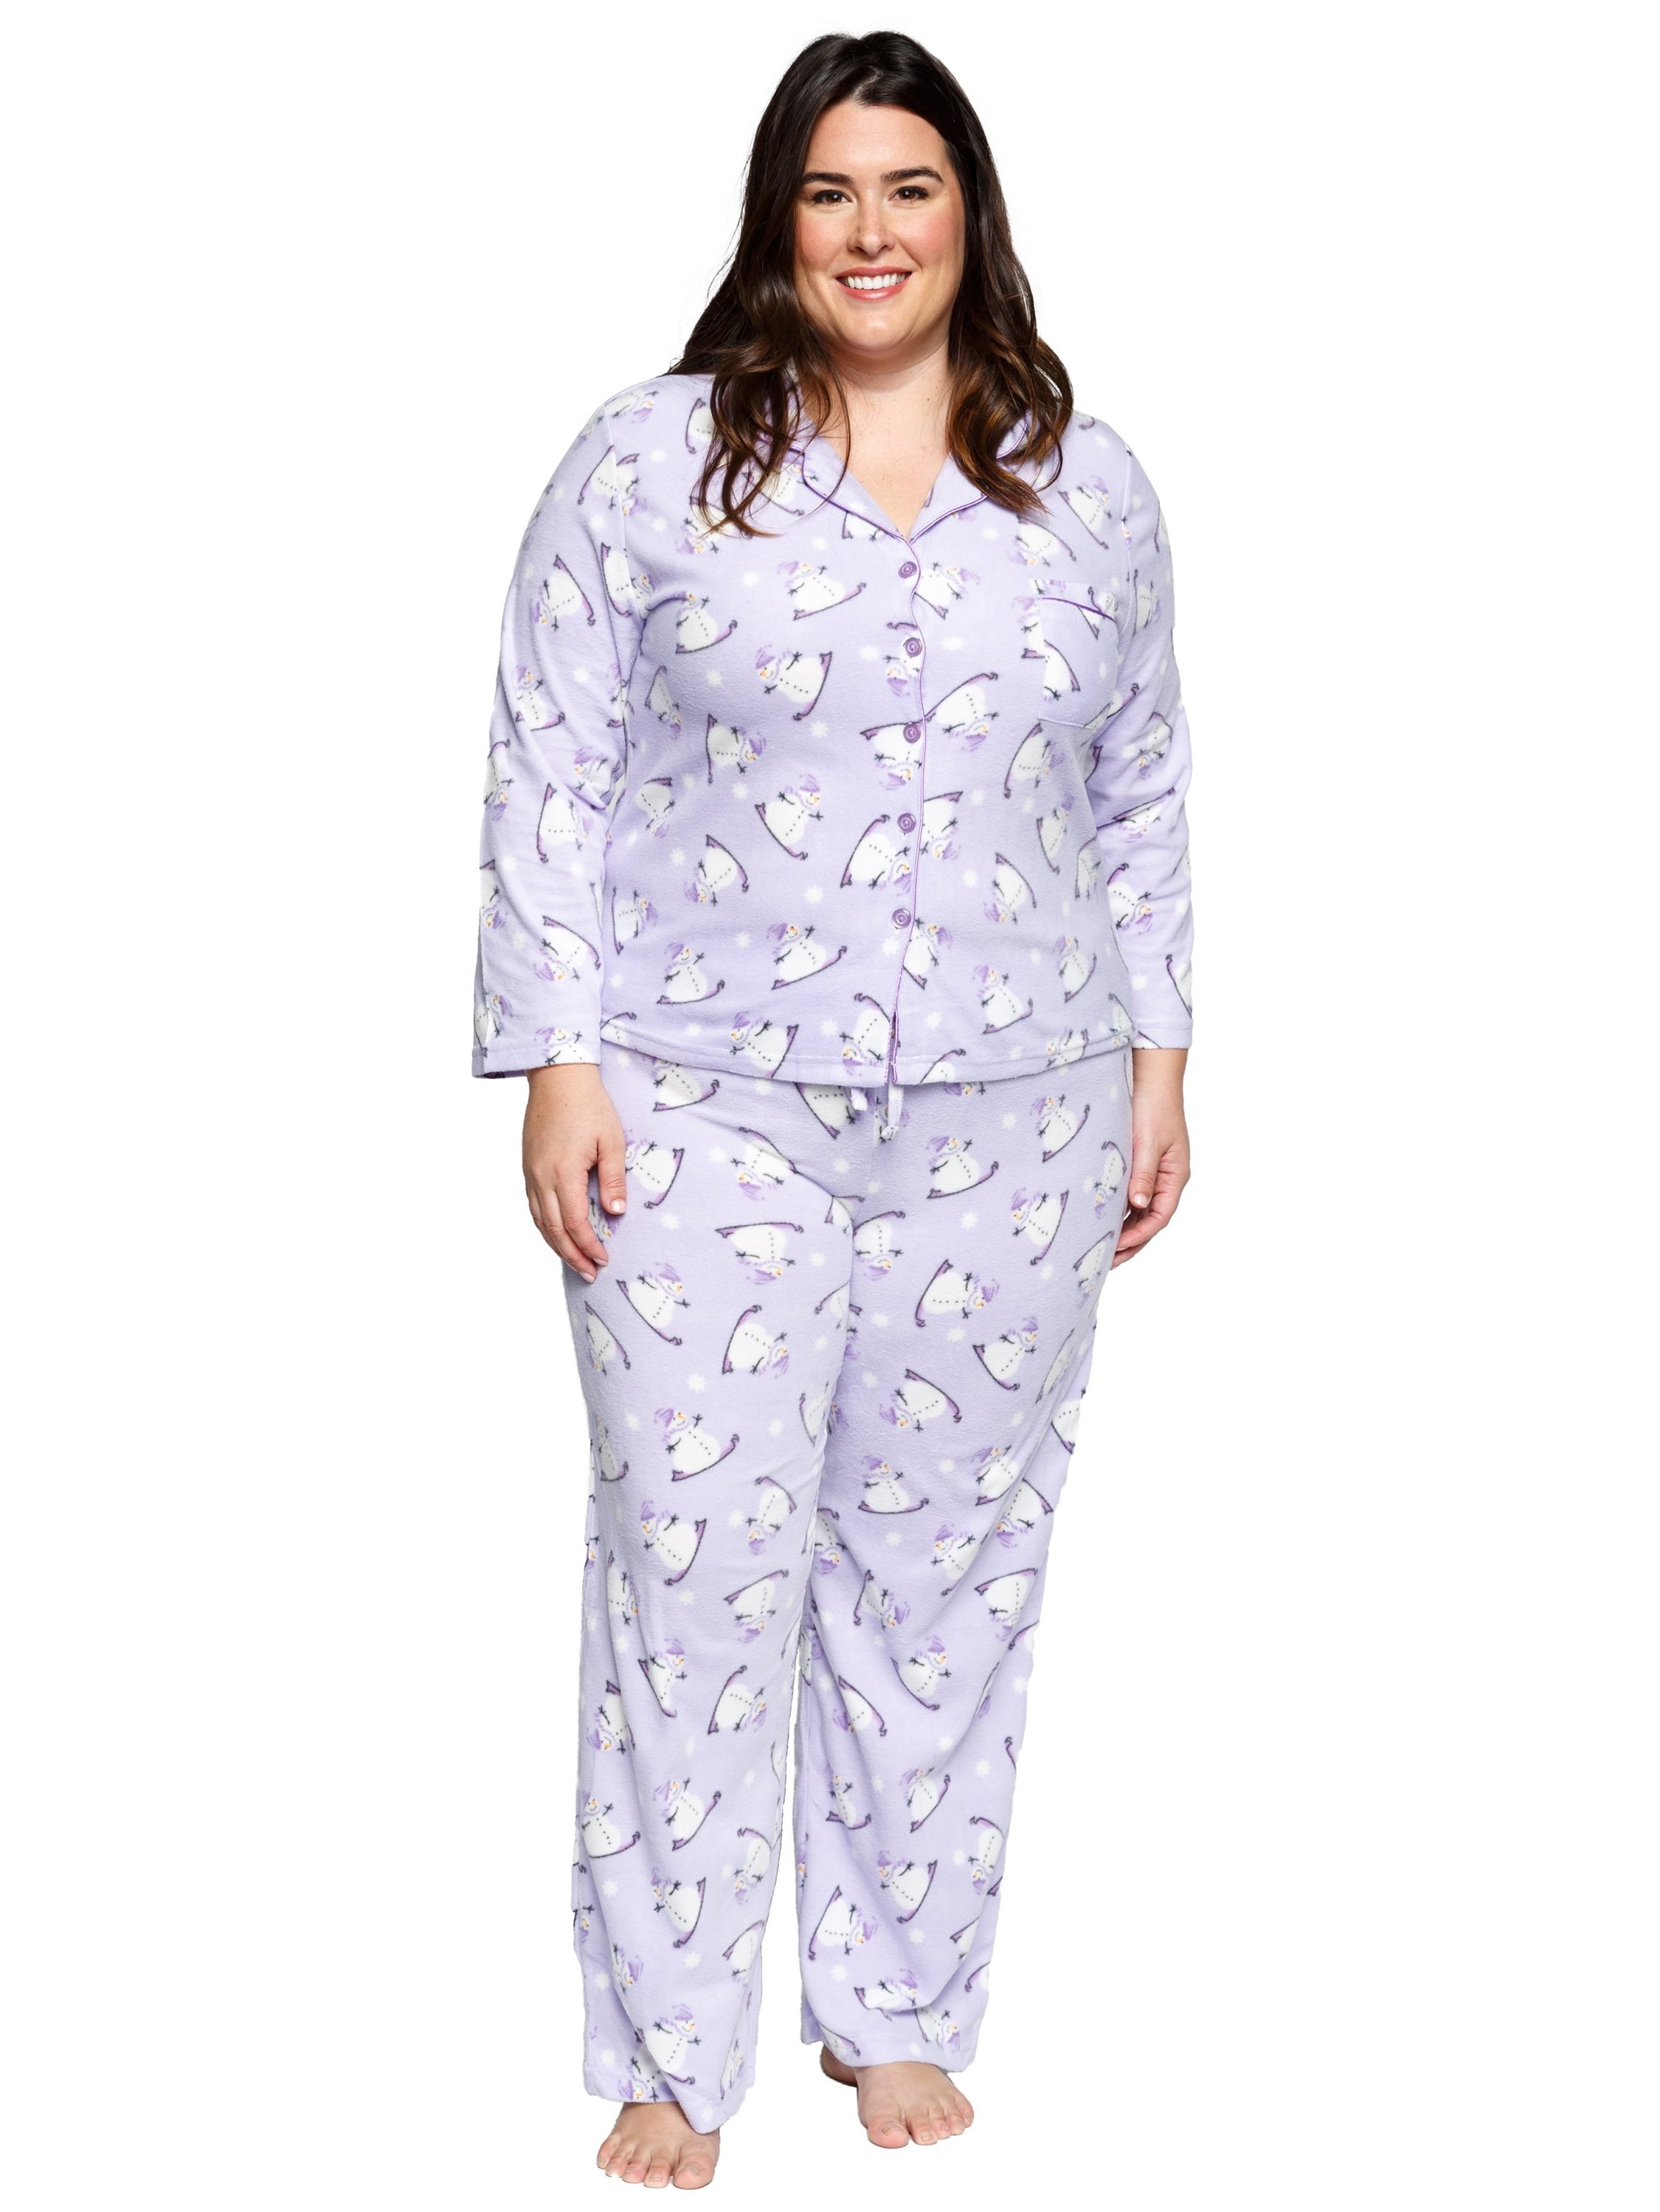 Xehar - Women's Plus Size Sleepwear Long Sleeve Snowmen Pajamas Pjs Set